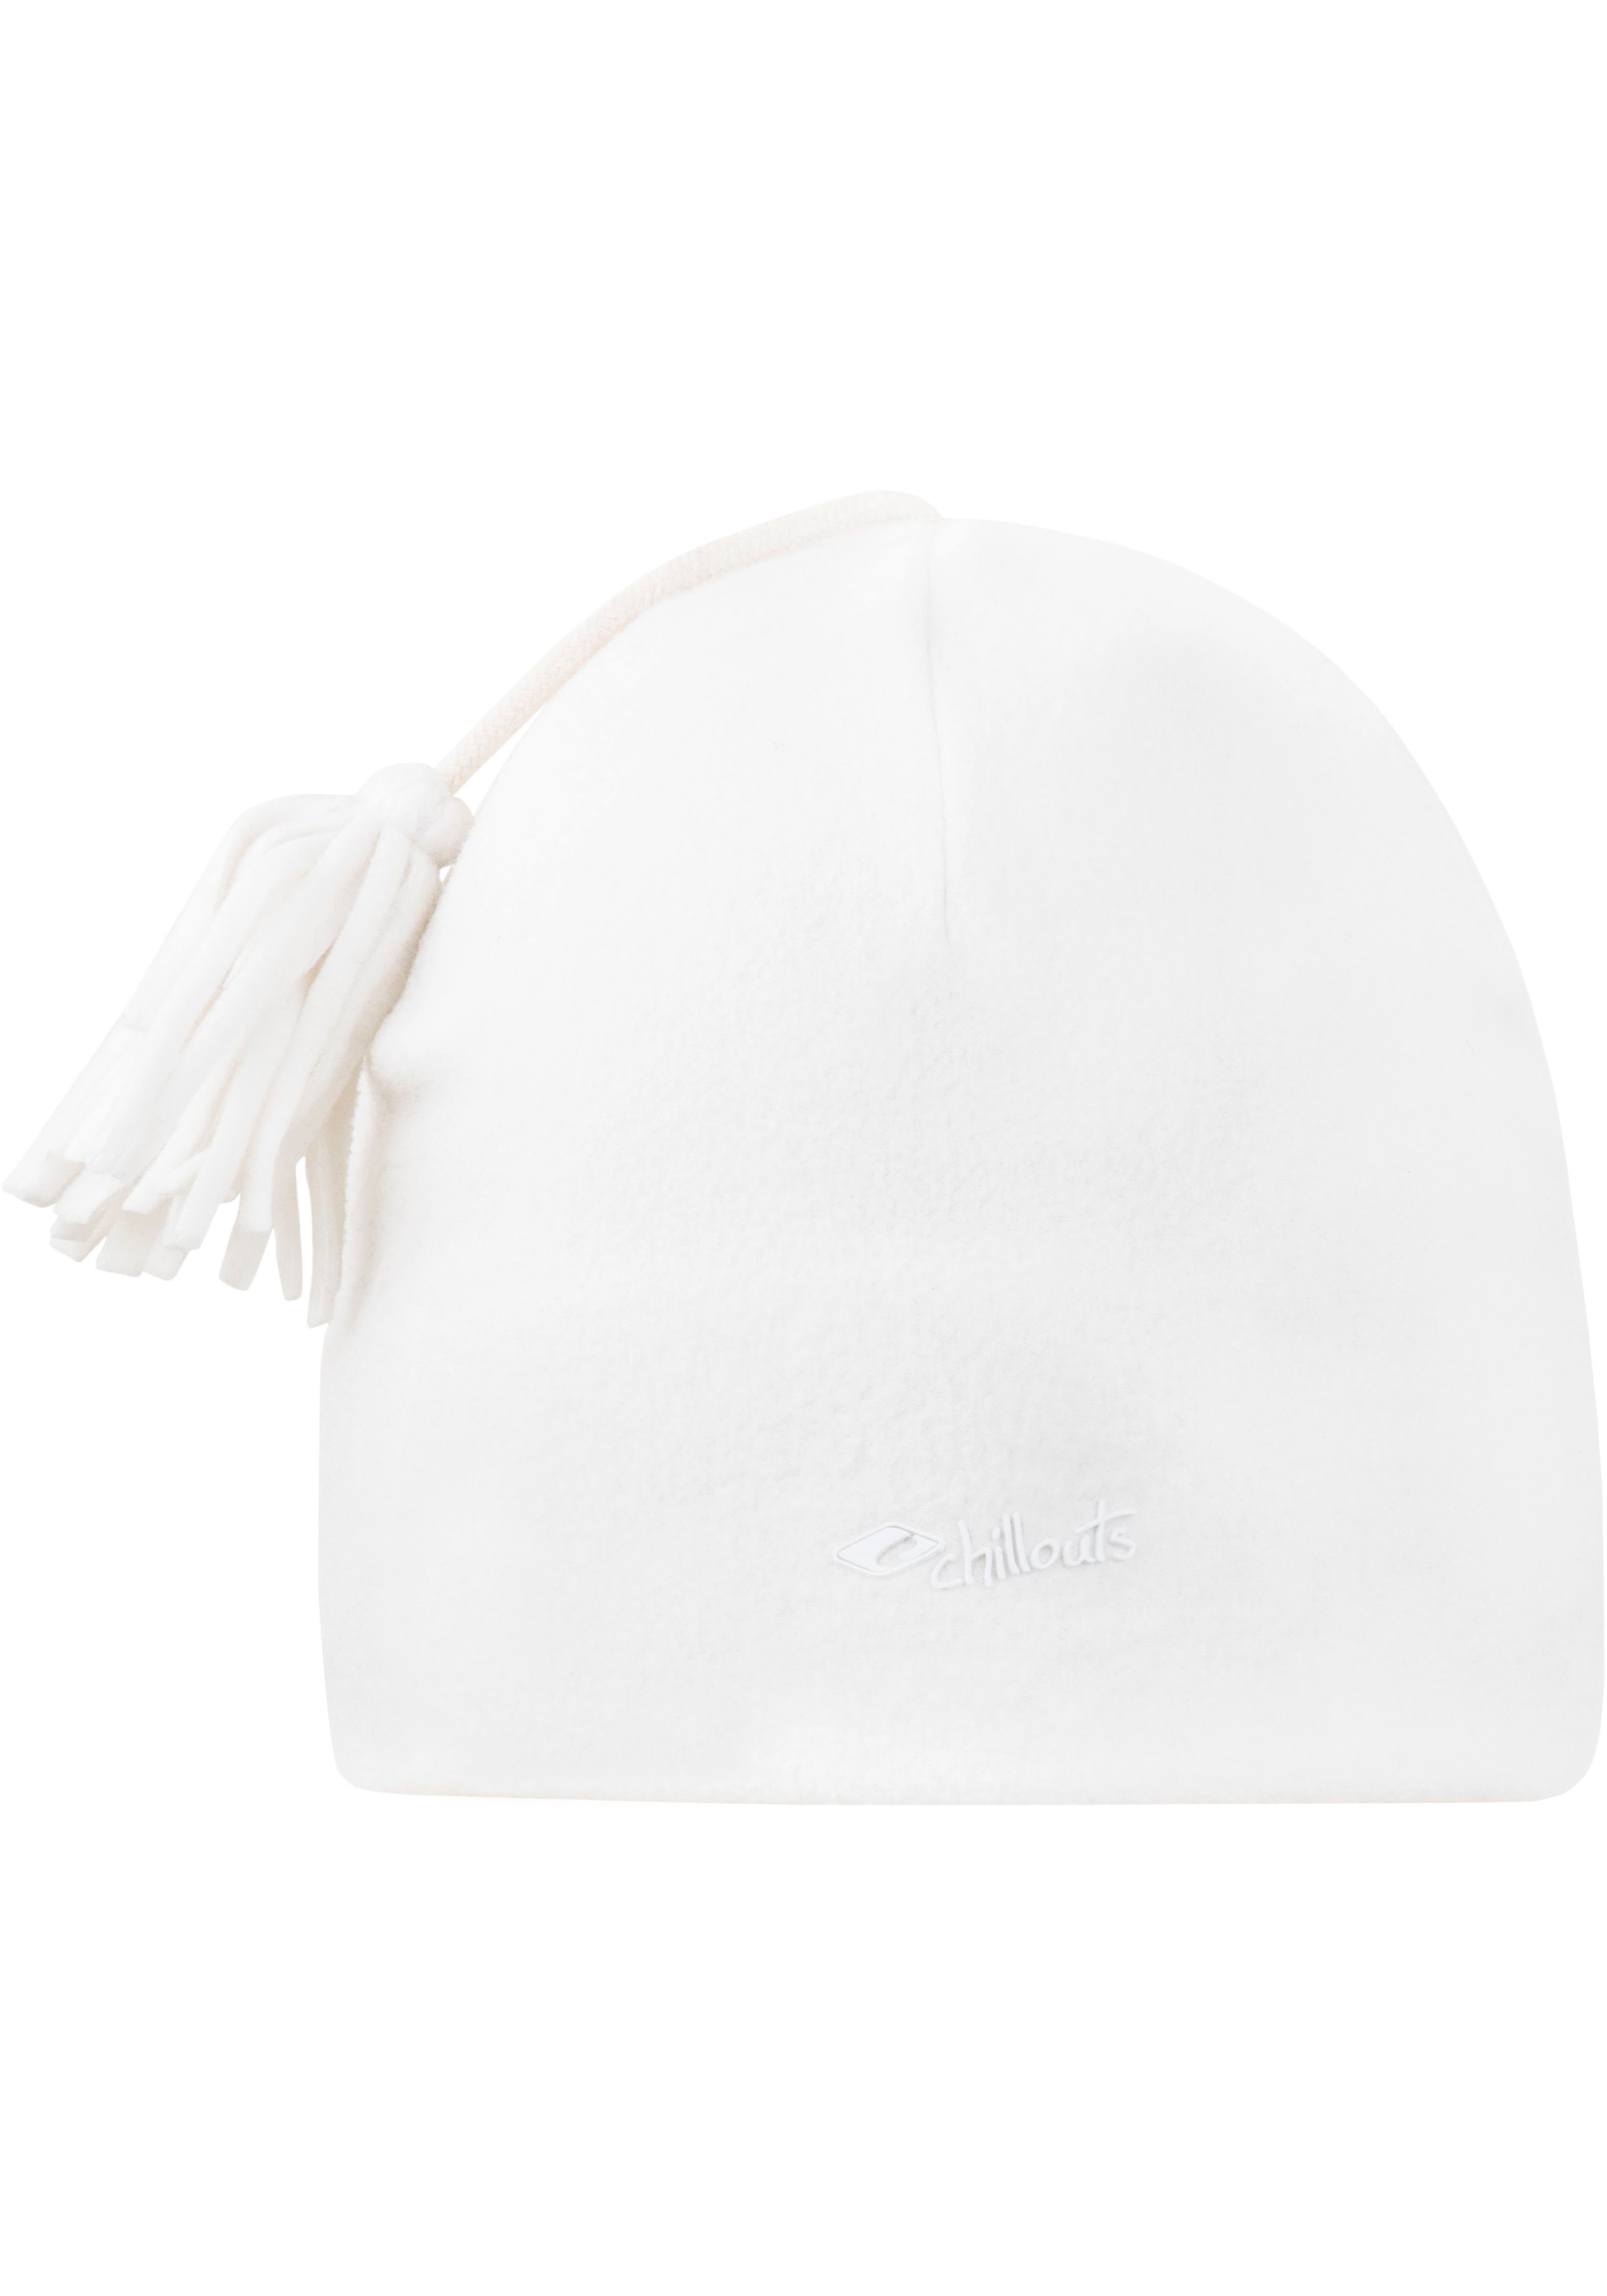 chillouts Fleecemütze Freeze Fleece Pom Hat white | Fleecemützen